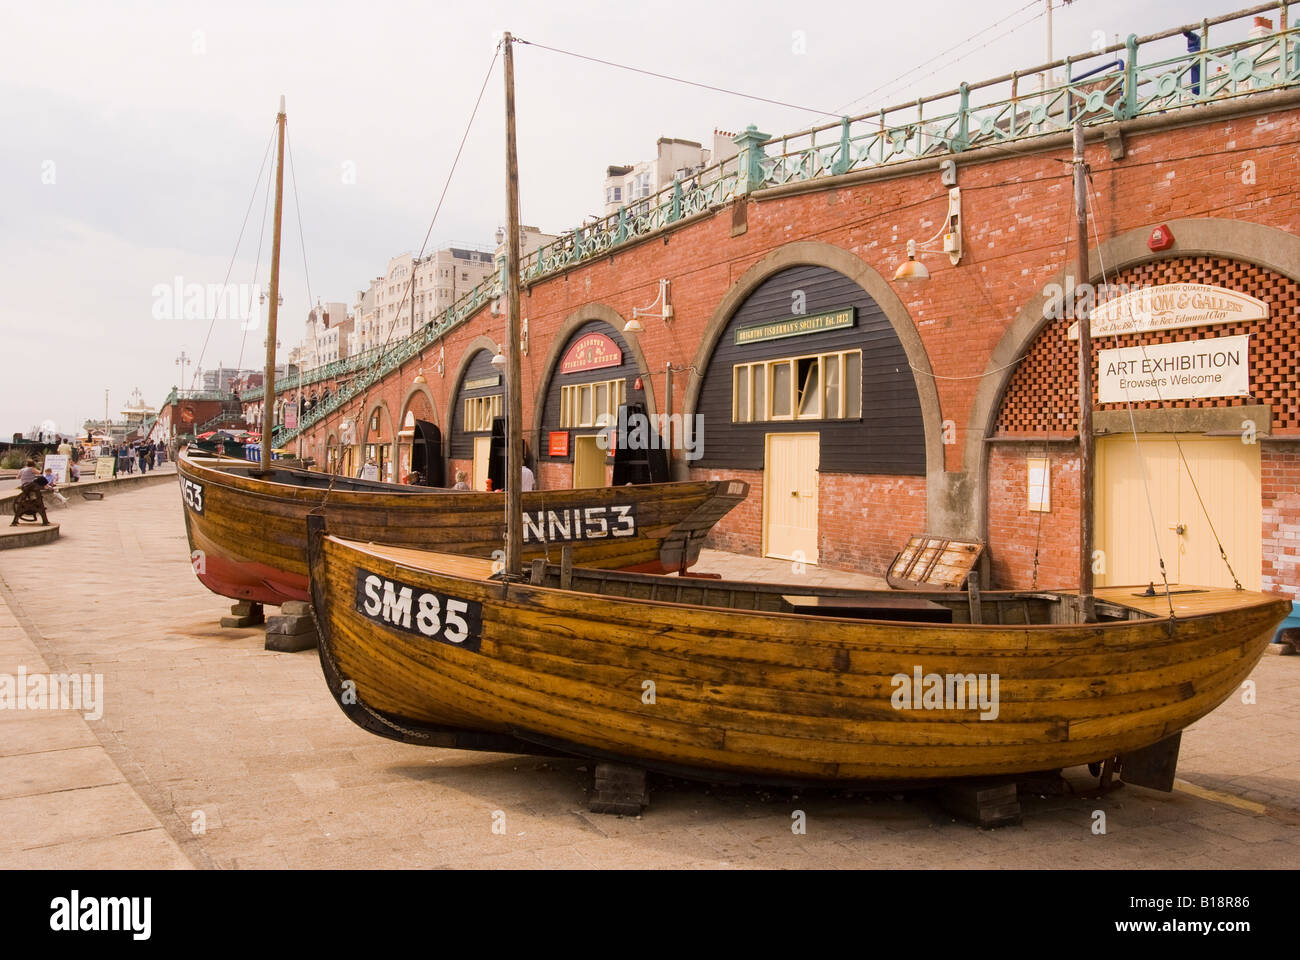 Le musée de la pêche de Brighton dans l'ancien quartier de pêcheurs, sur la mer. Banque D'Images